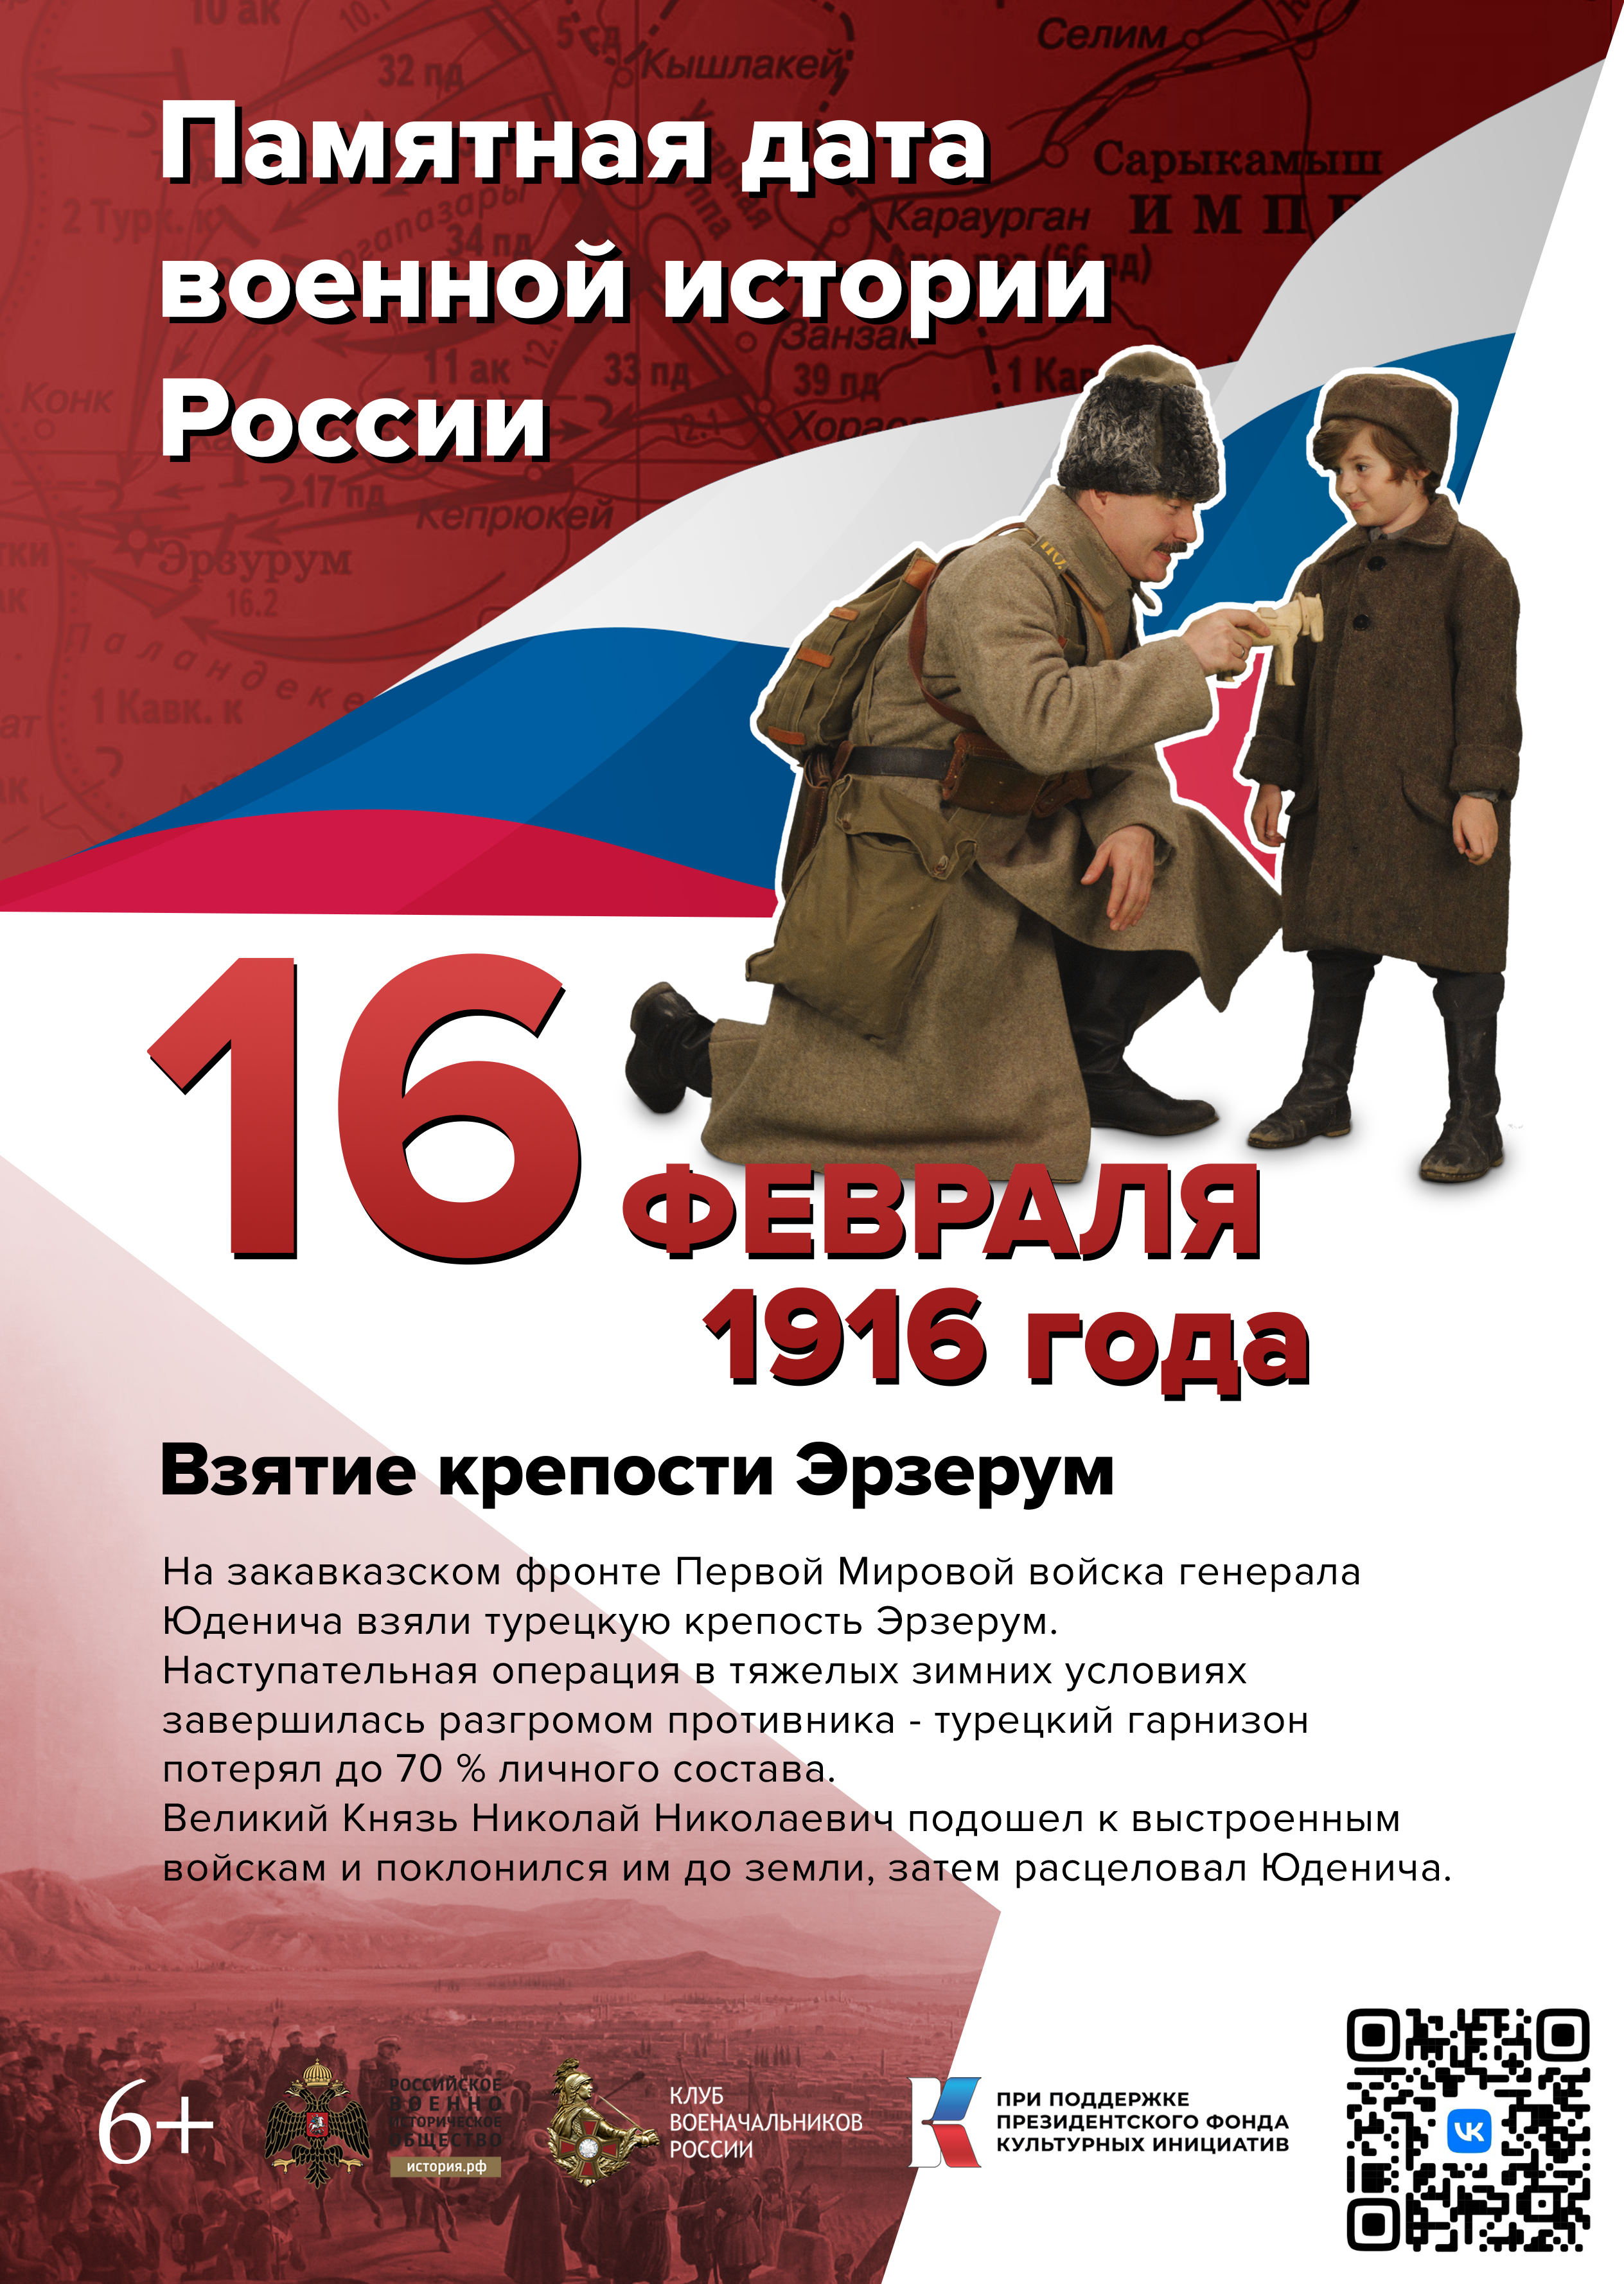 Памятные даты февраля в военной истории России